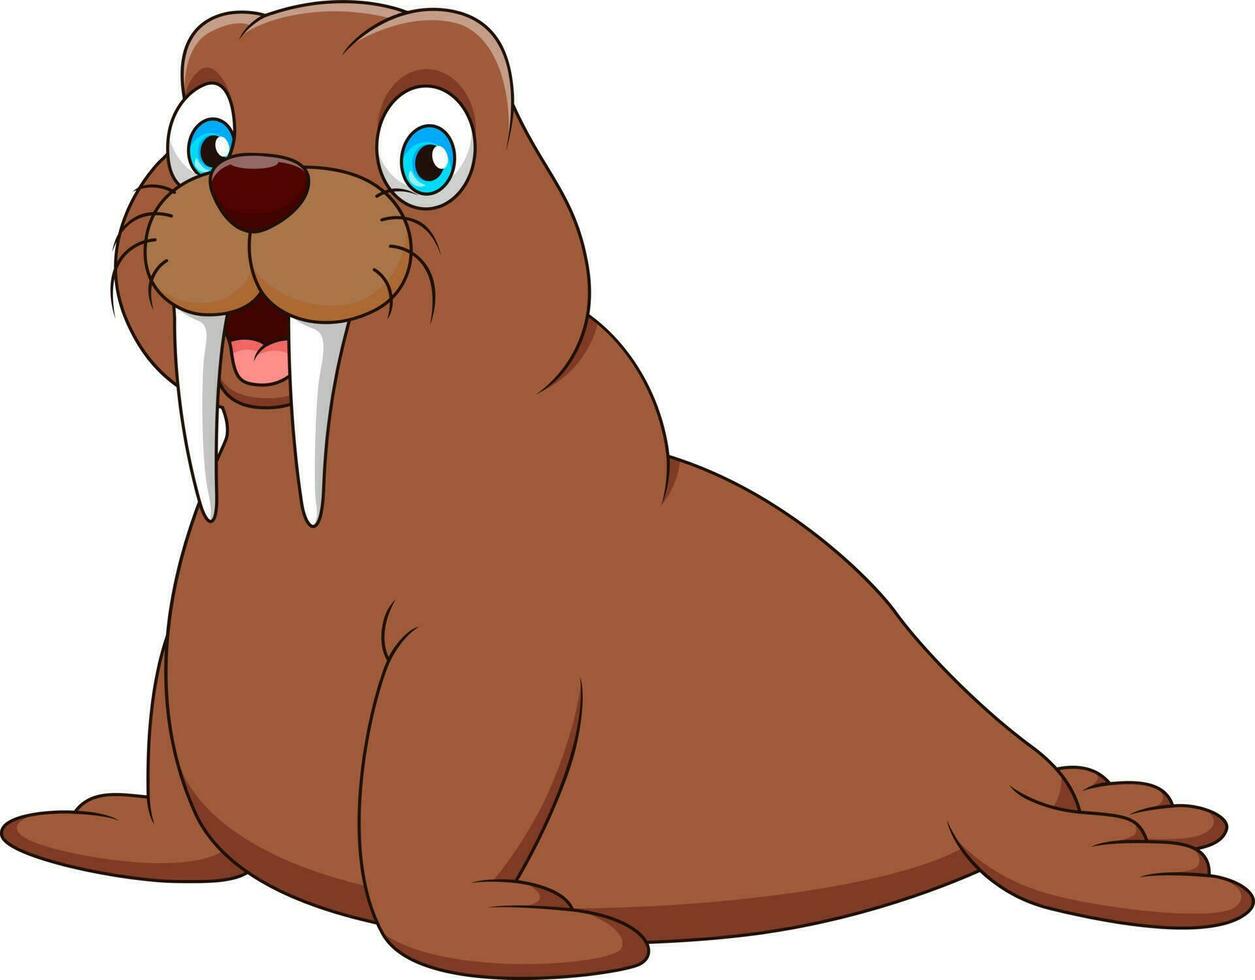 Cute walrus mascot cartoon smiling. Cute animal mascot cartoon vector